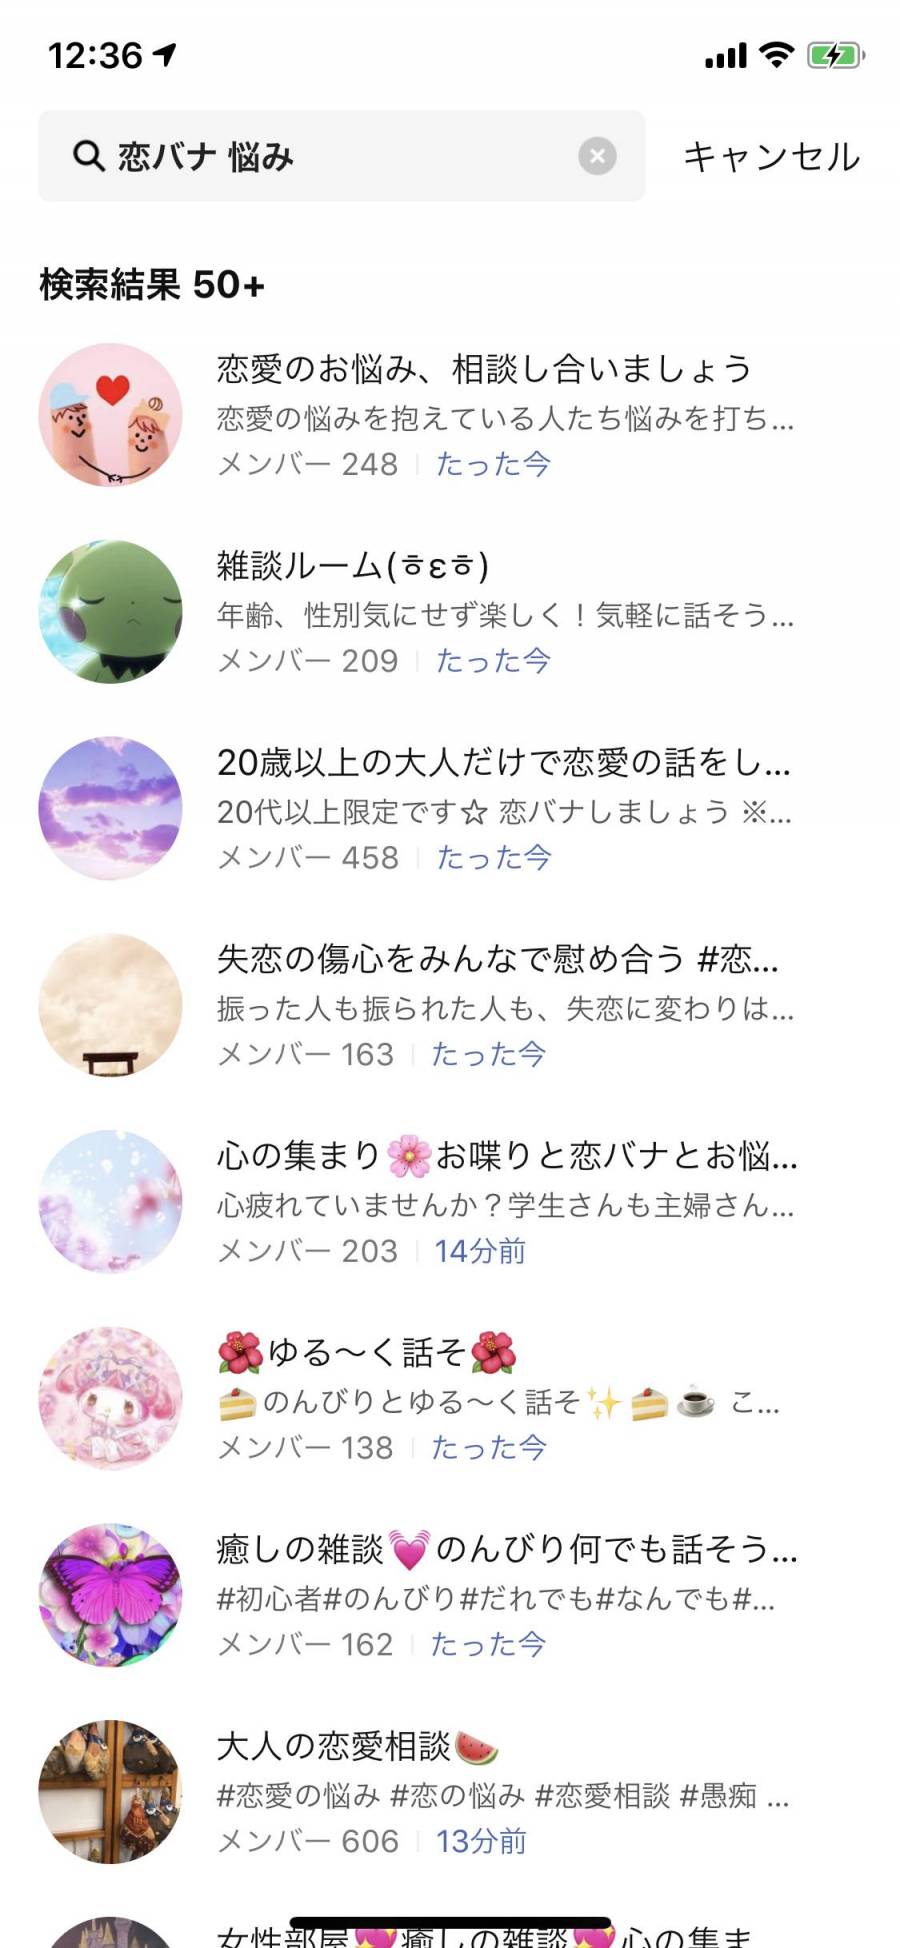 「恋バナ 悩み」の検索画面